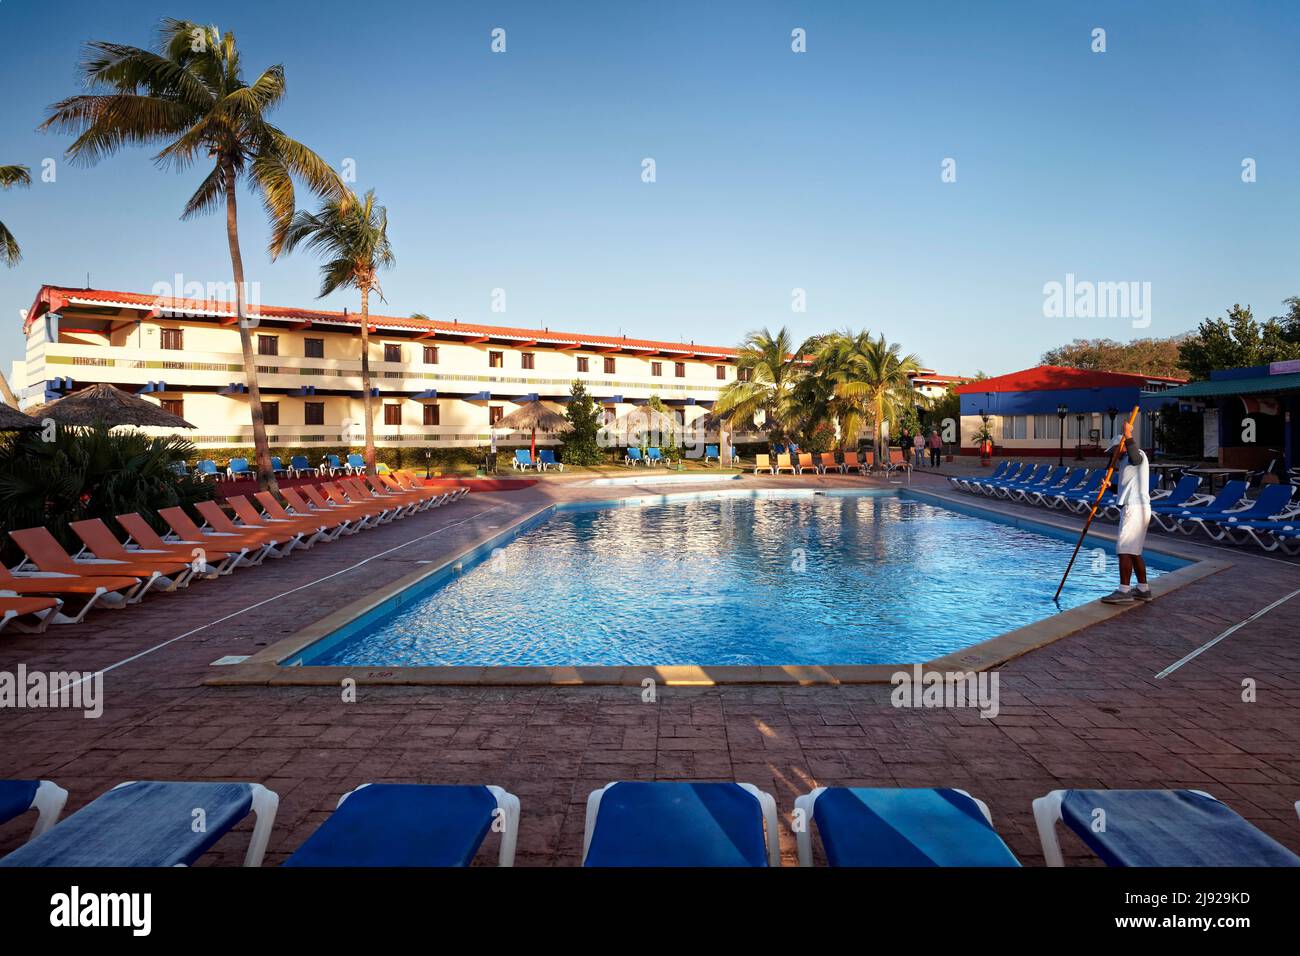 Mann reinigt Swimmingpool, Sonnenliege, hinter dem Hotelgebäude, Sonnenschirm, Kokospalme (Cocos nucifera), Hotel Club Amigo Costasur, Trinidad, Trinidad Stockfoto